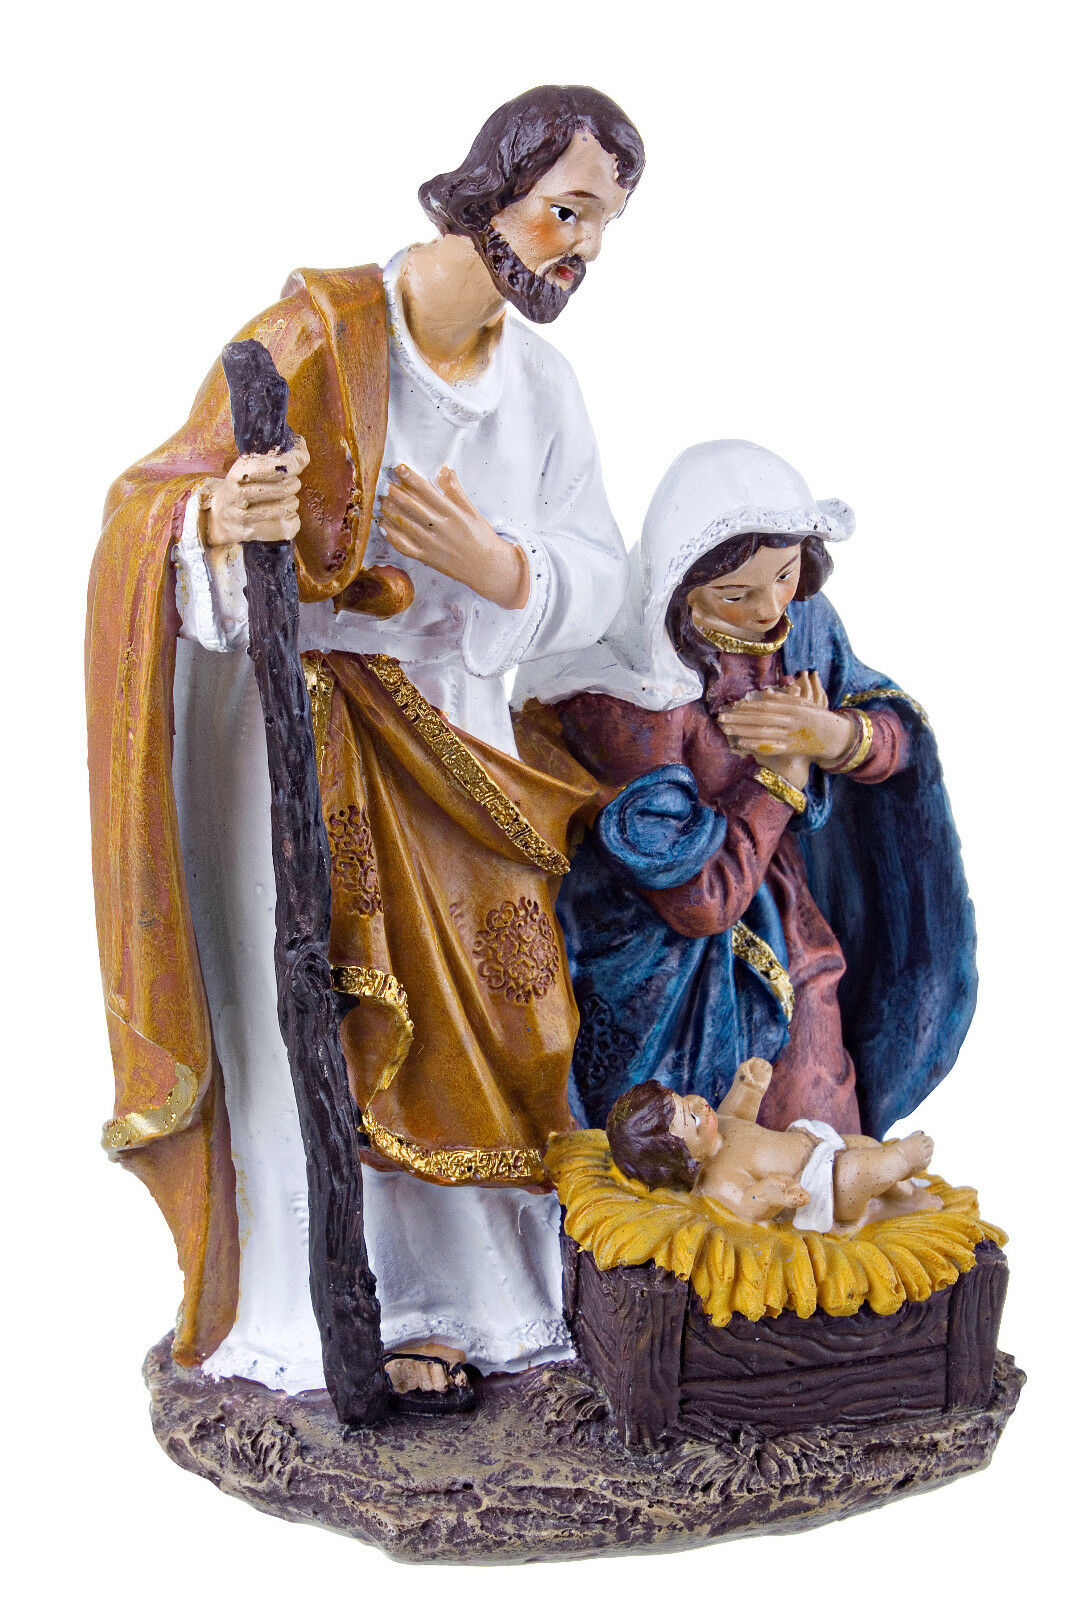 Presepe Natività Betlem San Giuseppe la Madonna e il bambinello Addobbi Natale